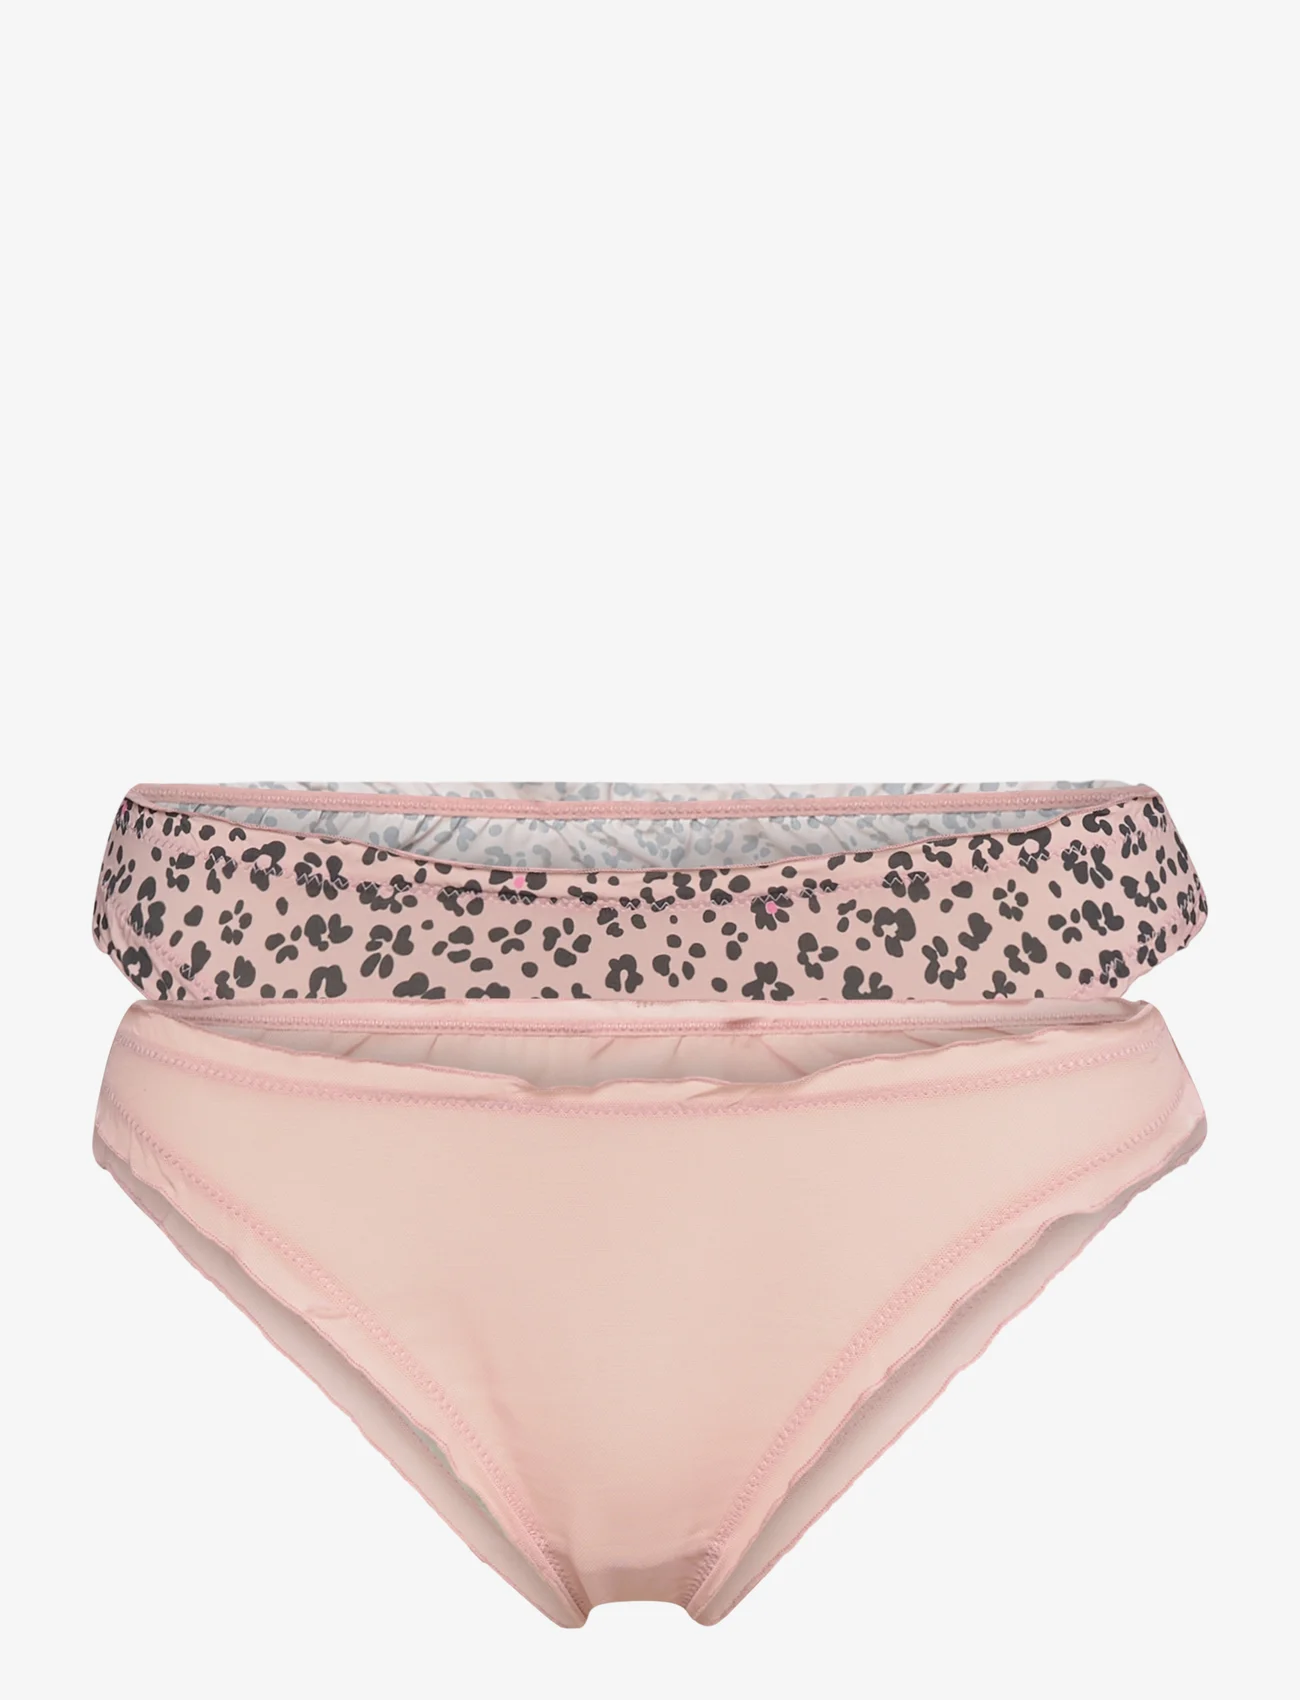 Esprit Bodywear Women - Women Bottoms mini (brief) - laveste priser - old pink 3 - 0